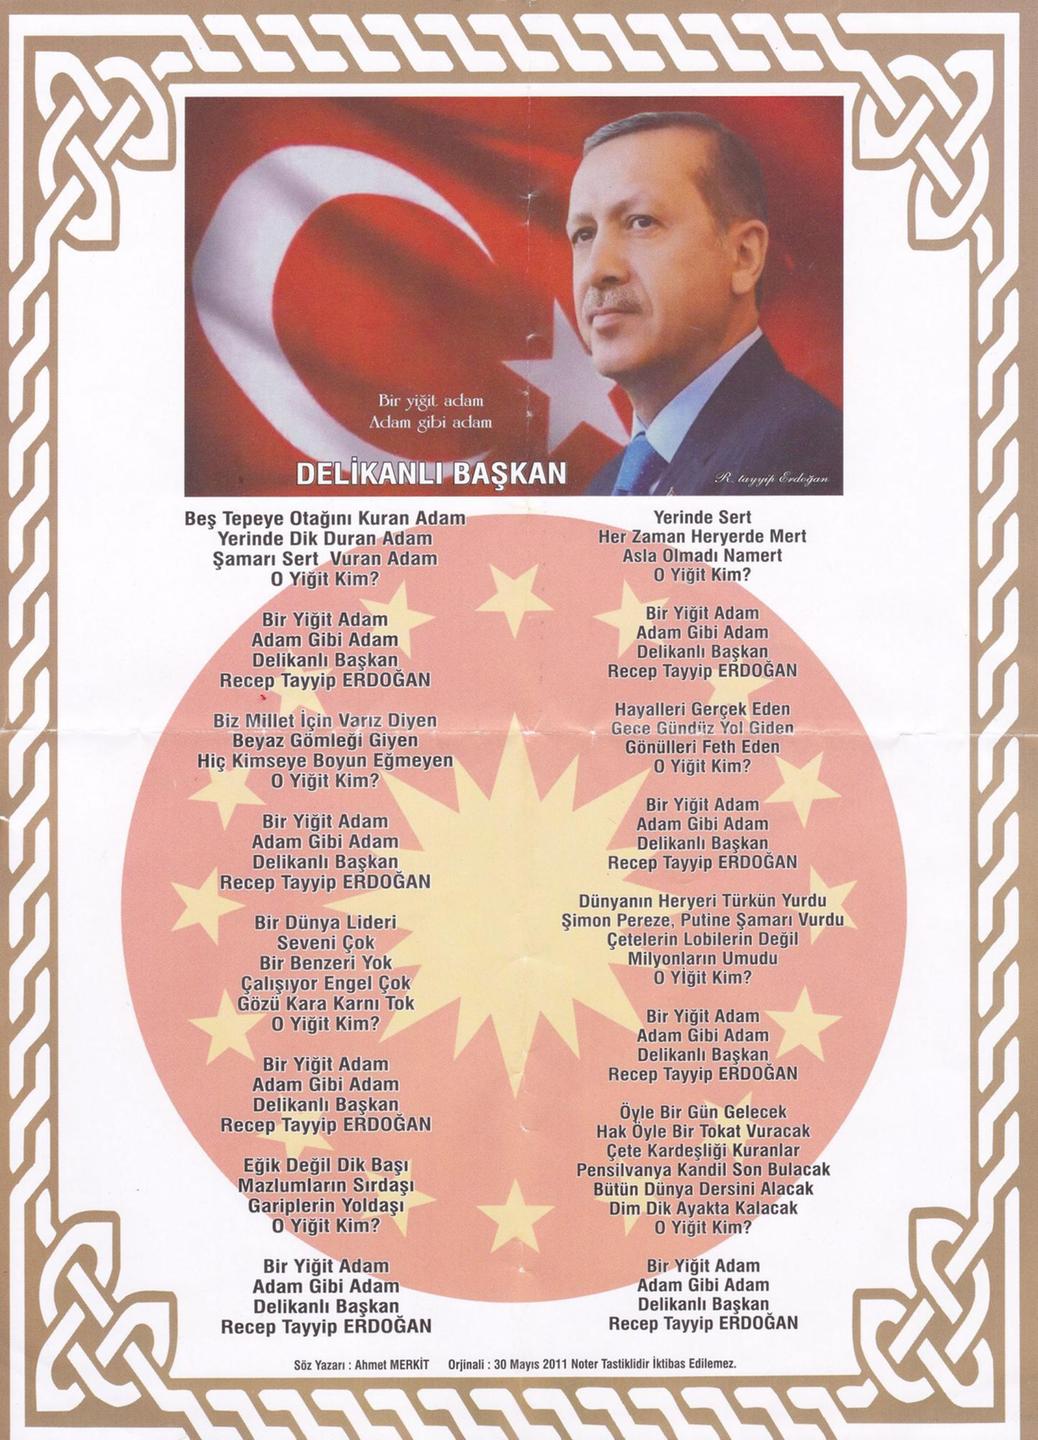 Ein Gedicht für den türkischen Präsidenten Recep Tayyip Erdogan von einem seiner Anhänger, verziert mit einem Bild Erdogans und Ornamenten